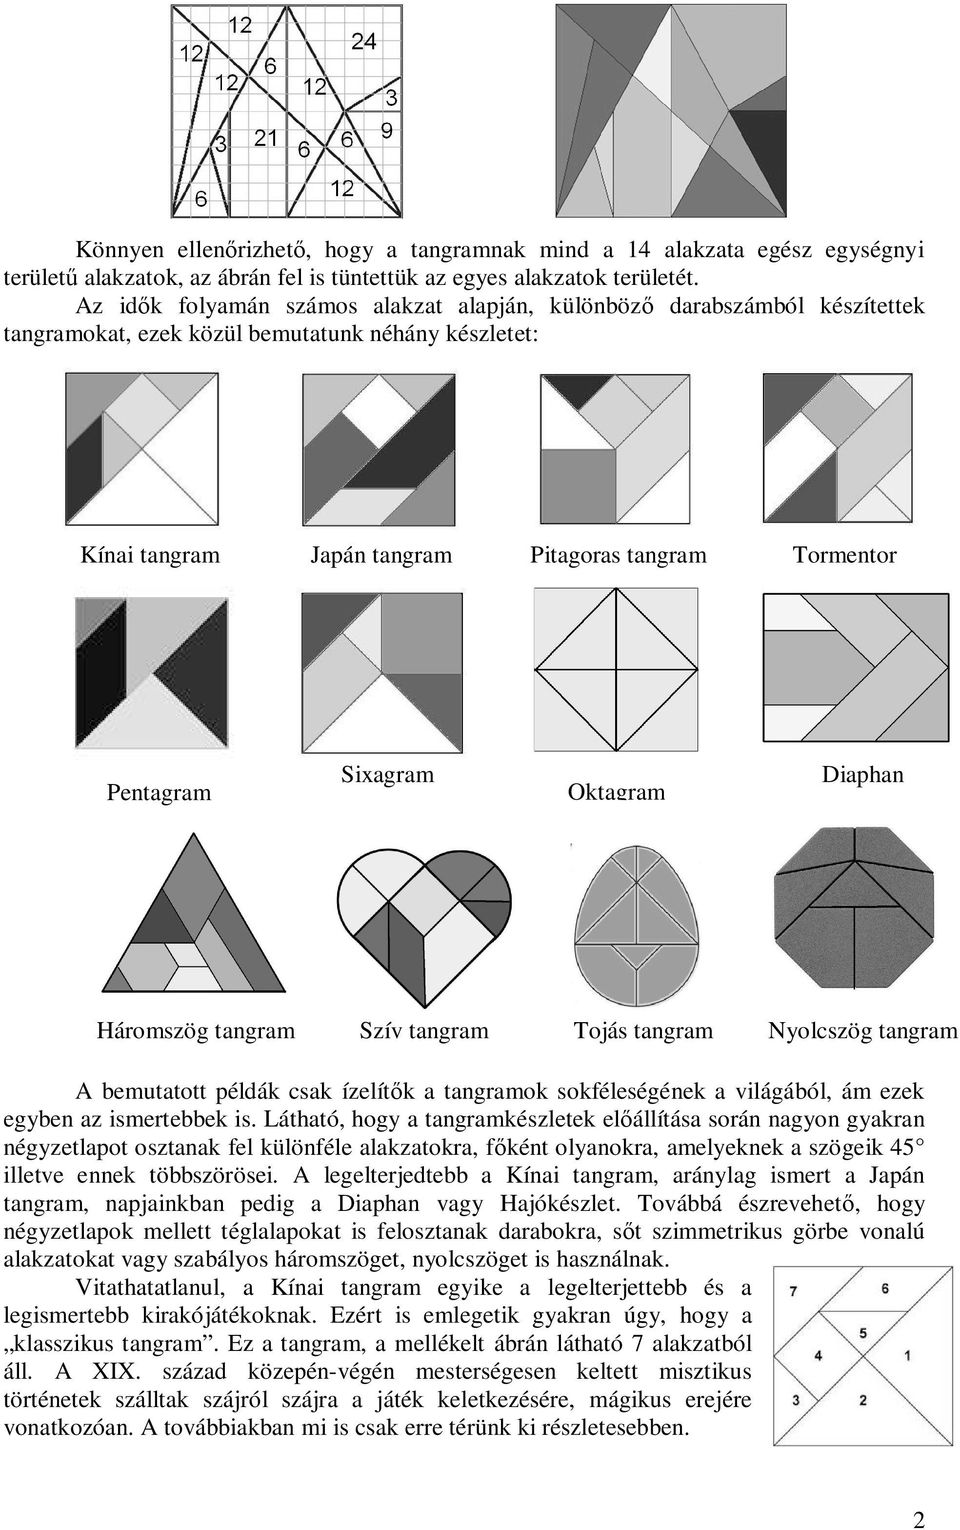 Sixagram Oktagram Diaphan Háromszög tangram Szív tangram Tojás tangram Nyolcszög tangram A bemutatott példák csak ízelít k a tangramok sokféleségének a világából, ám ezek egyben az ismertebbek is.